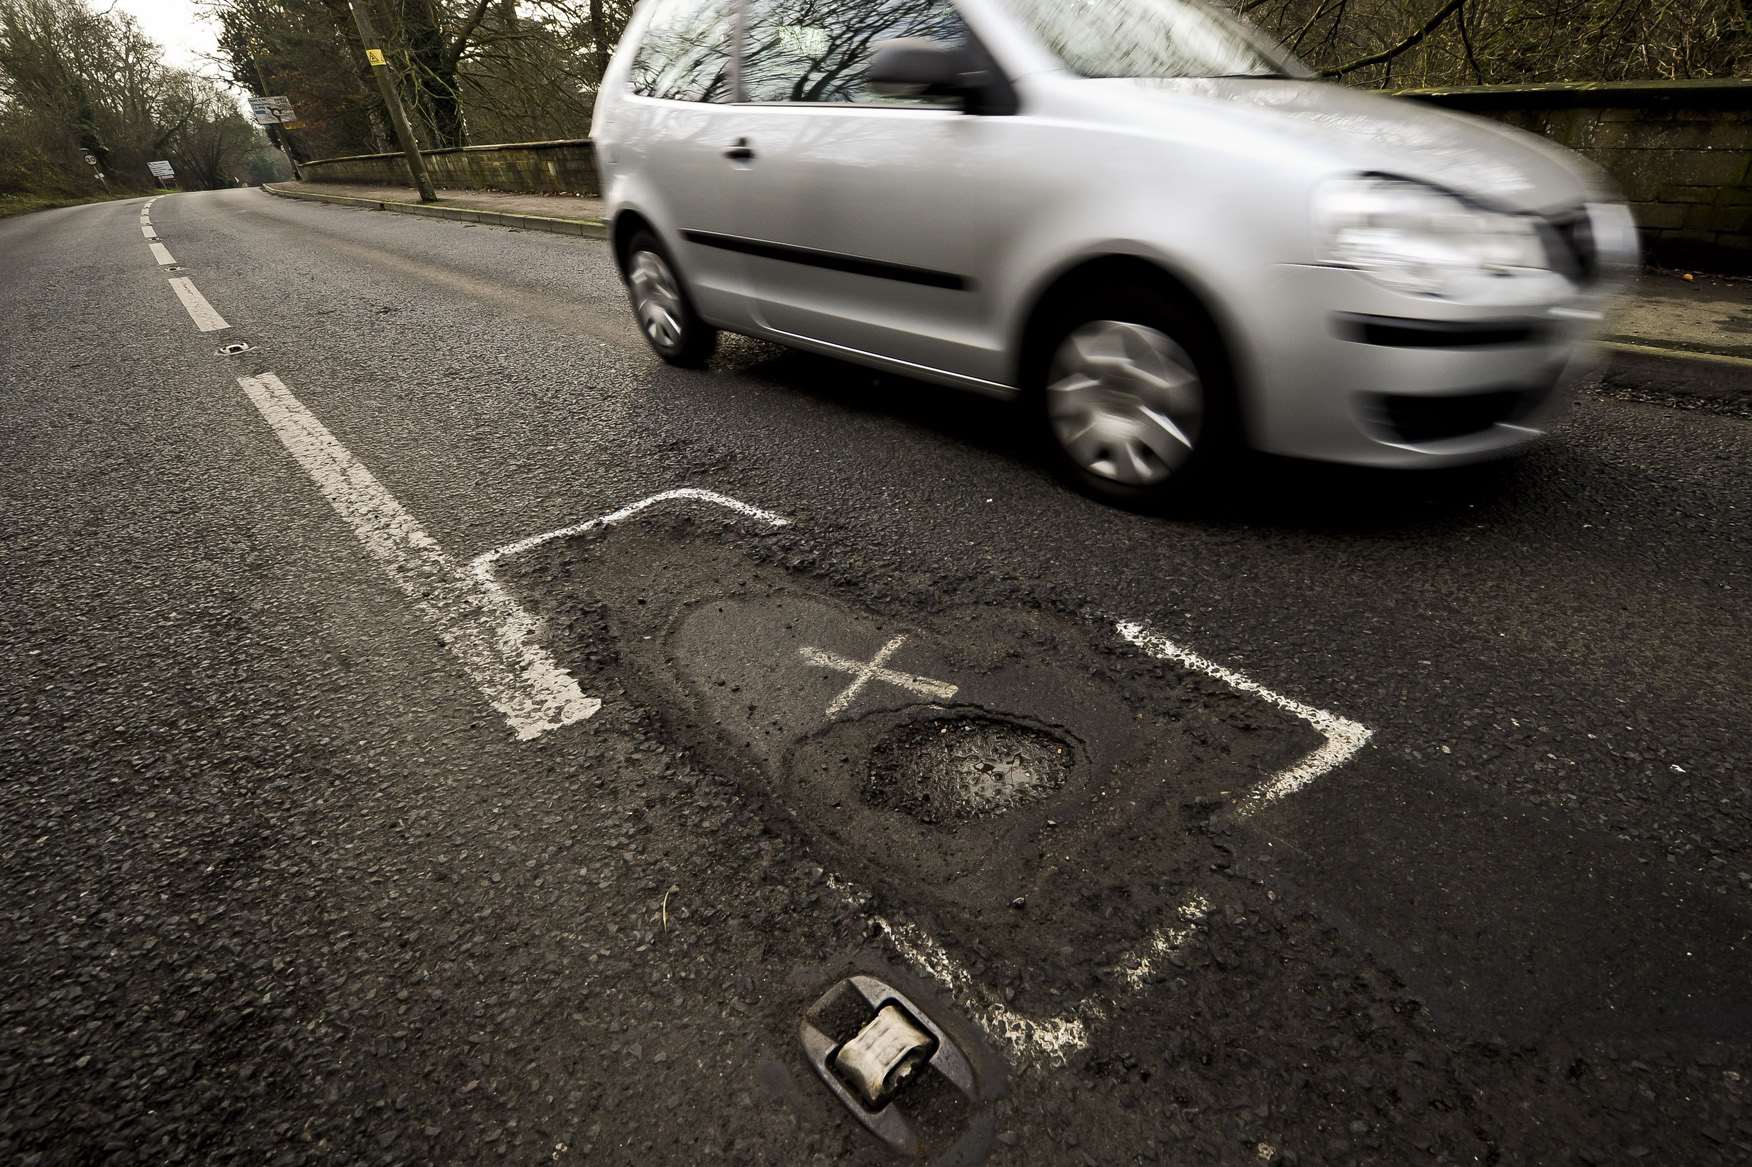 A typical pothole